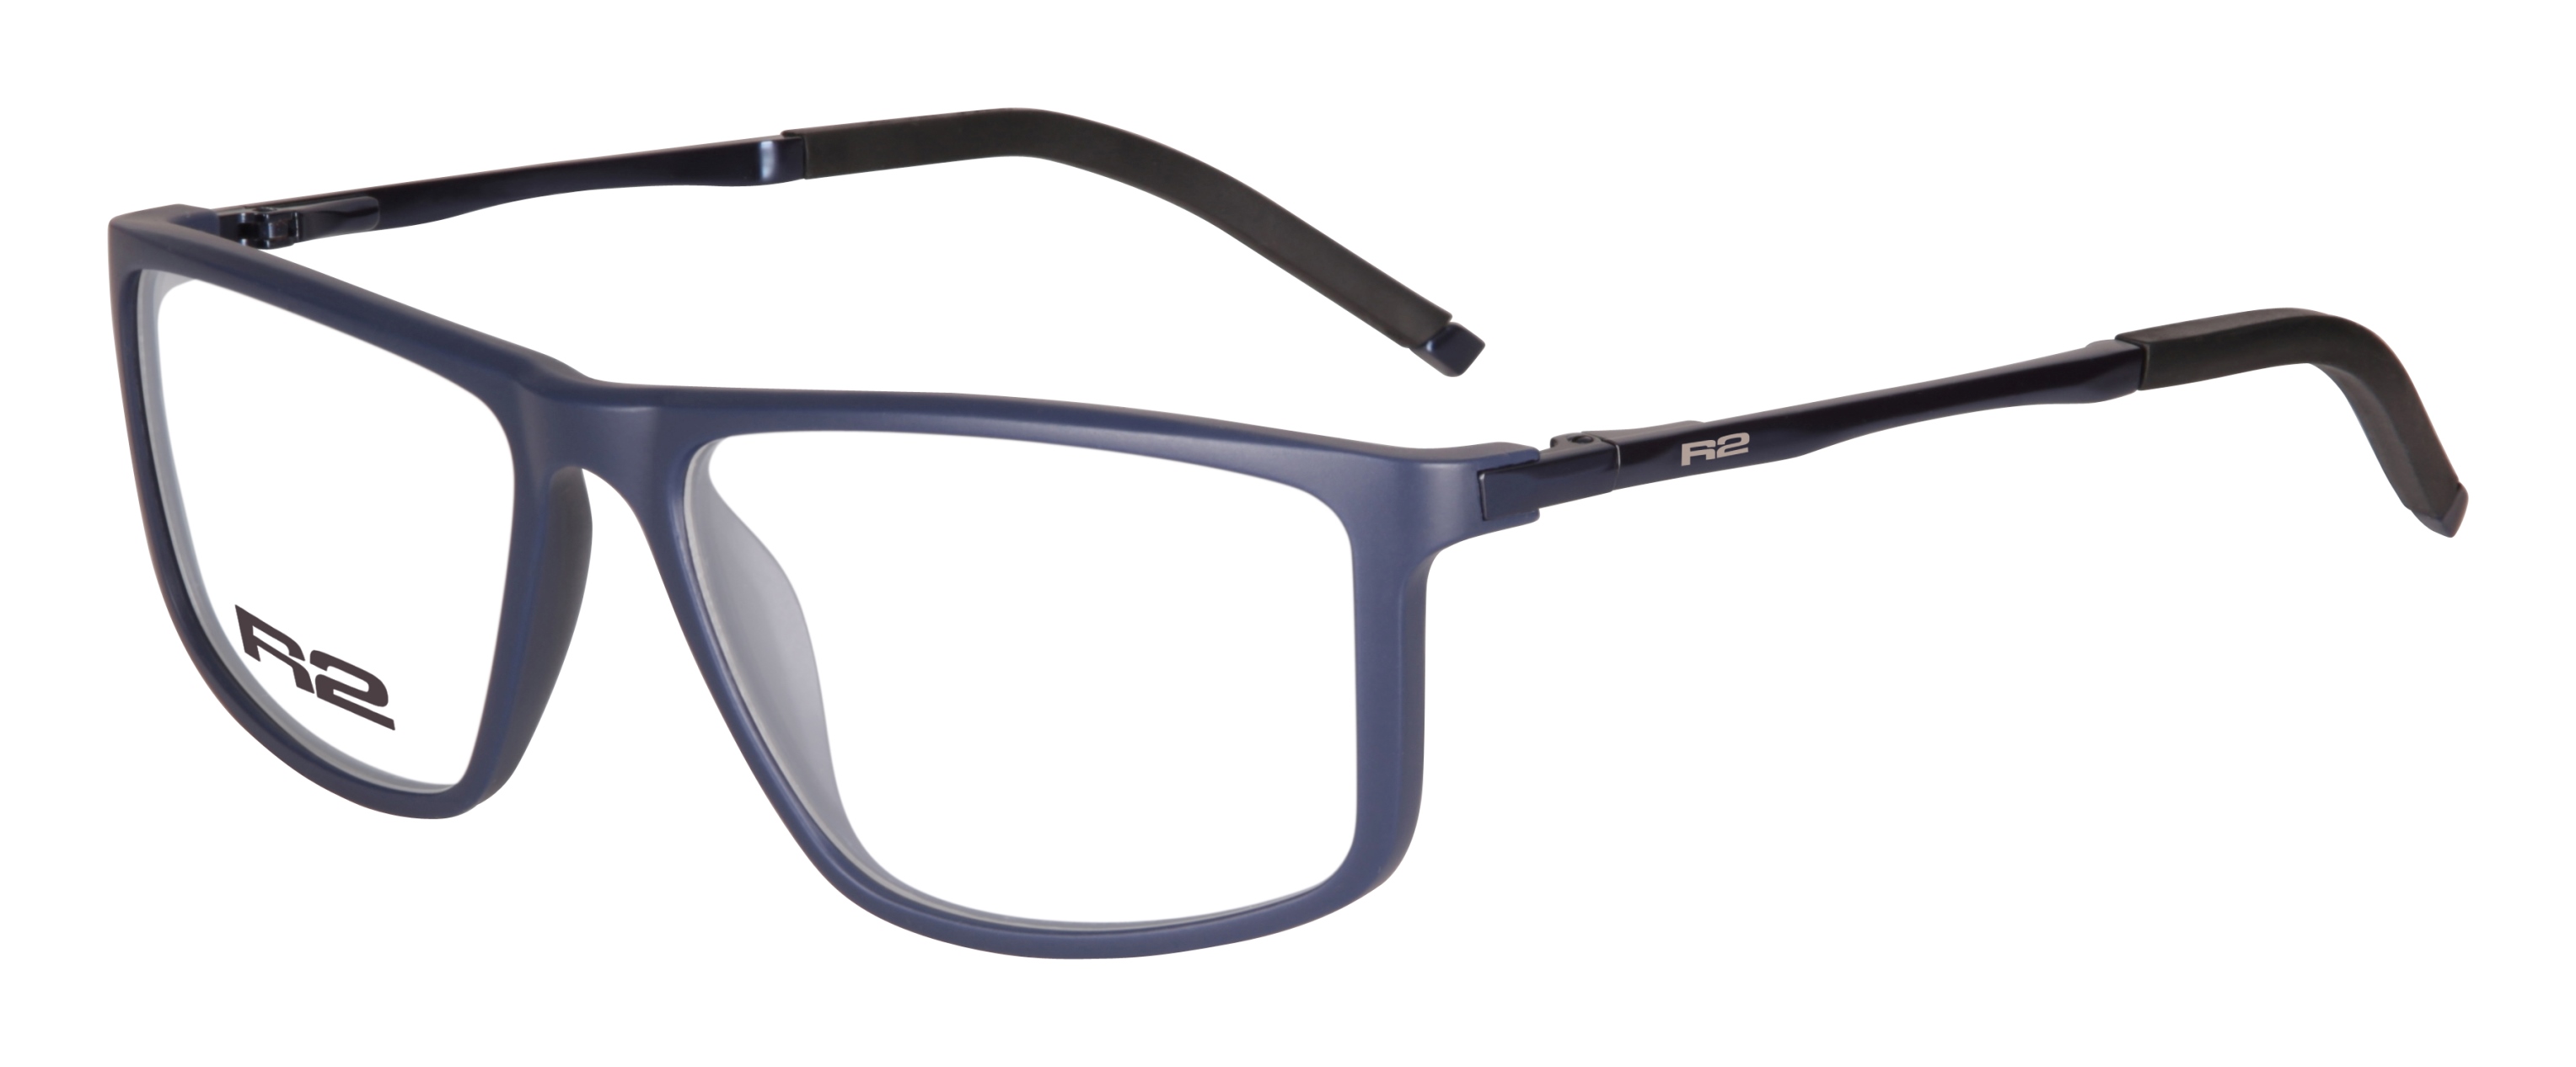 Sportovní dioptrické brýle R2 CROSS MAT105C2 - standard